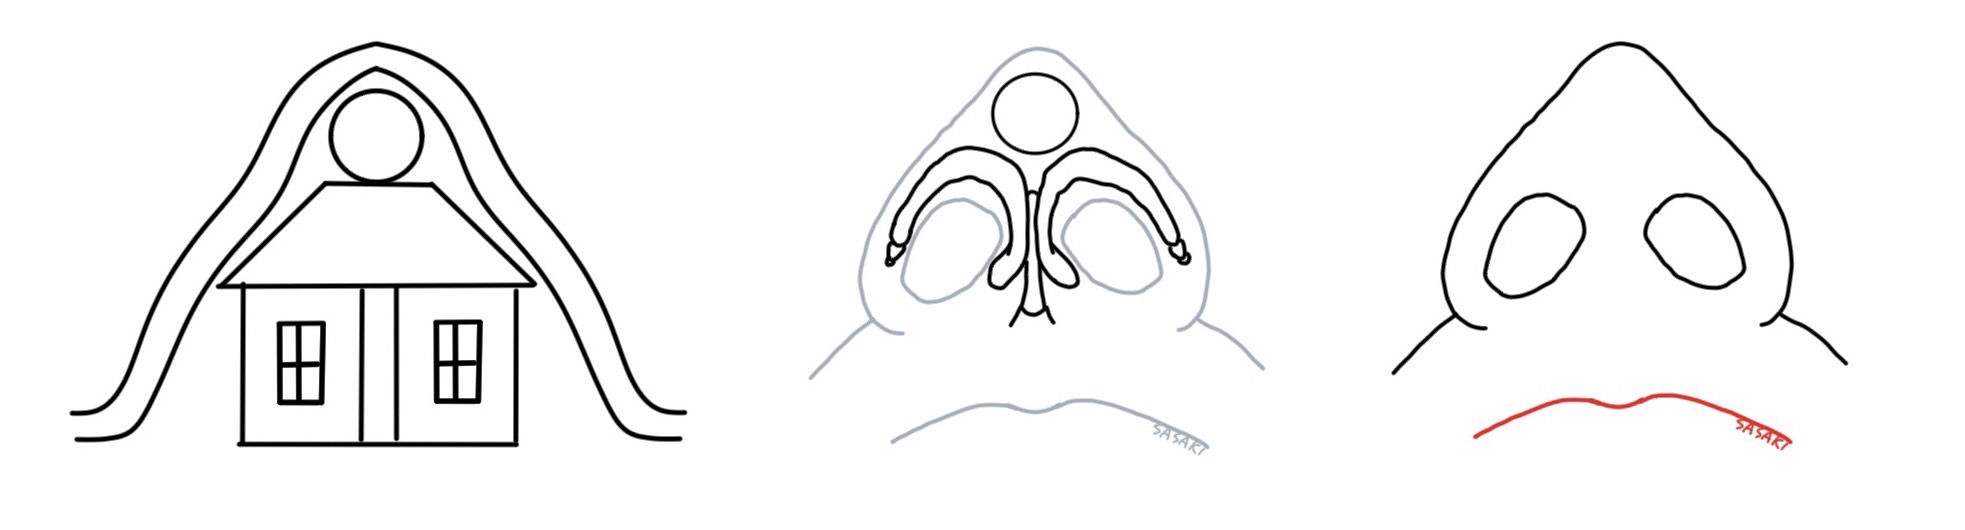 オステオポールで鼻先を高くした状態を模式図で表現したもの